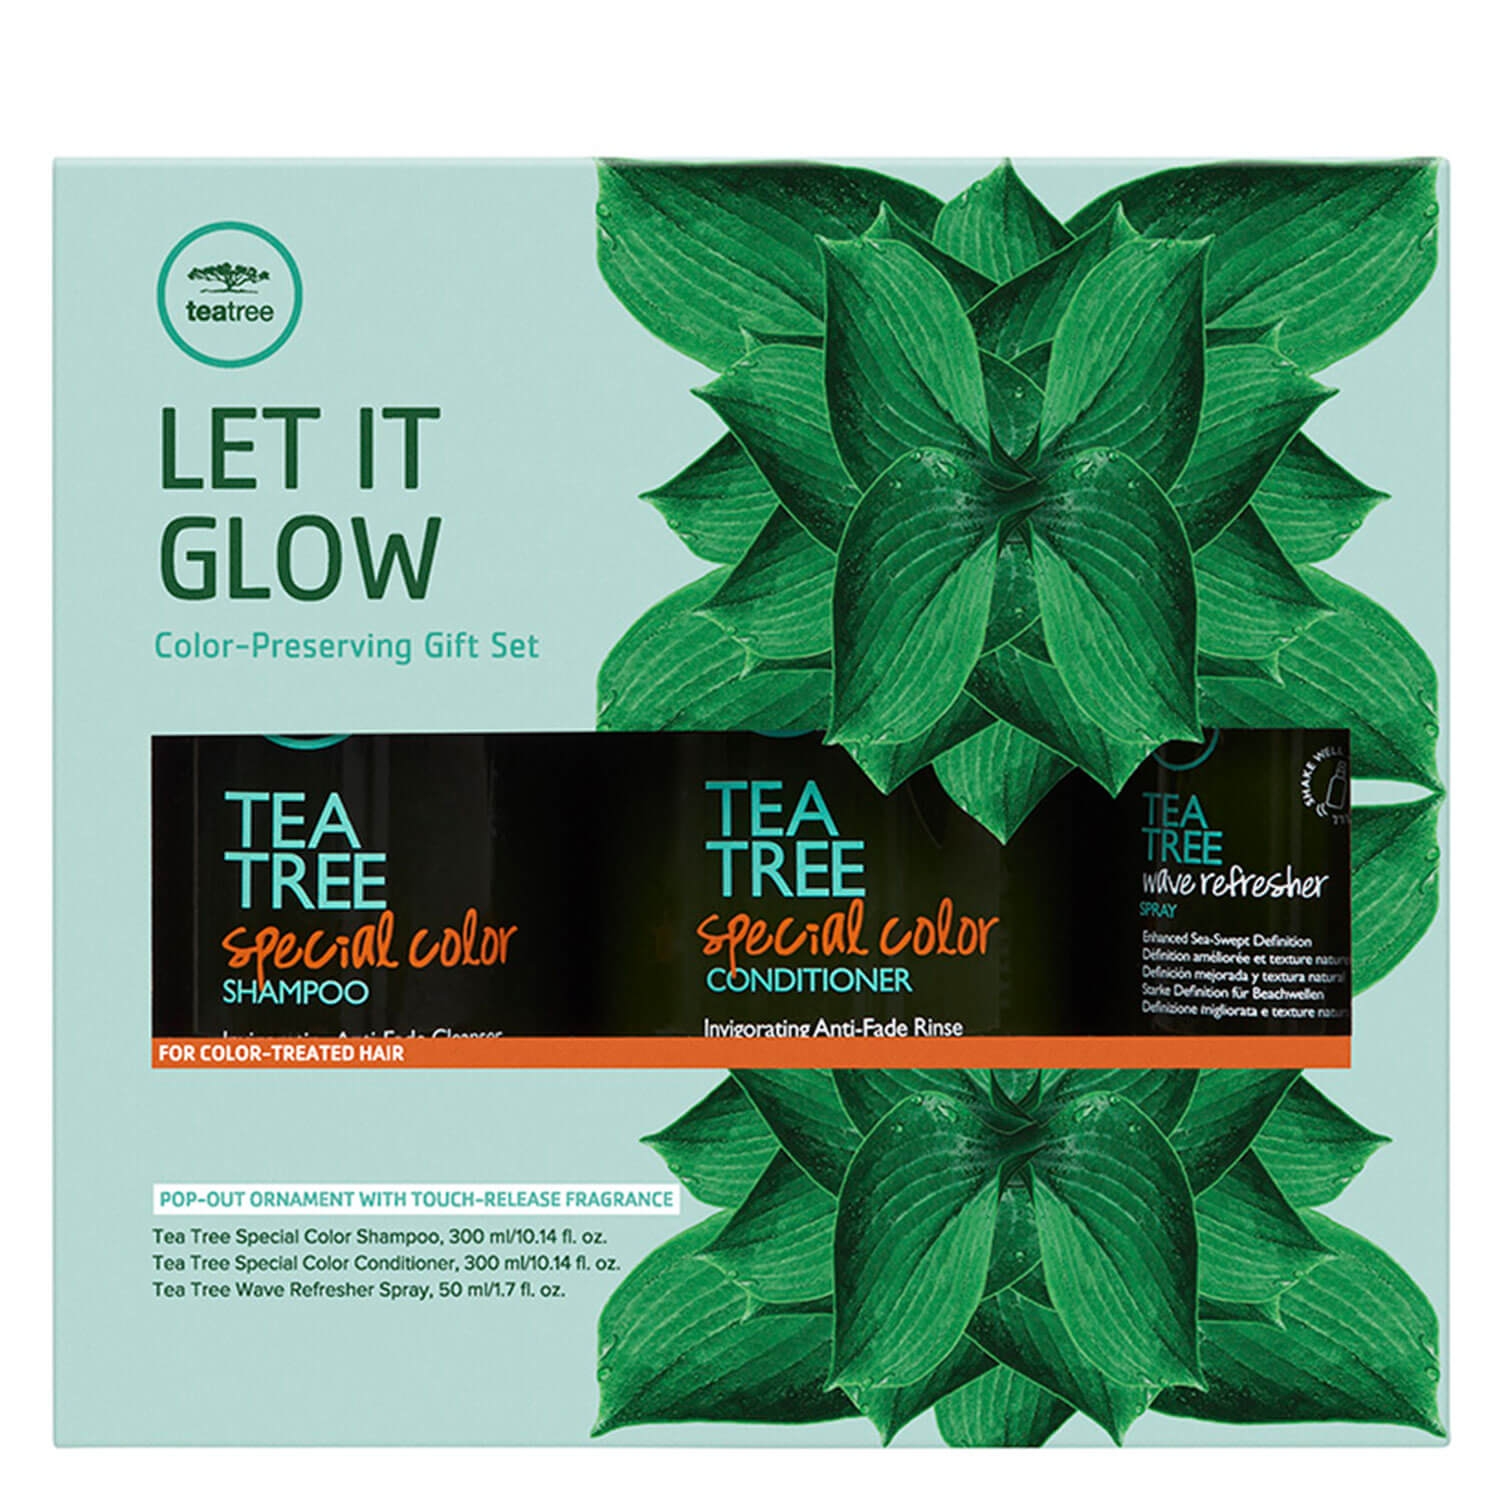 Produktbild von Tea Tree Special - Let It Glow Gift Set